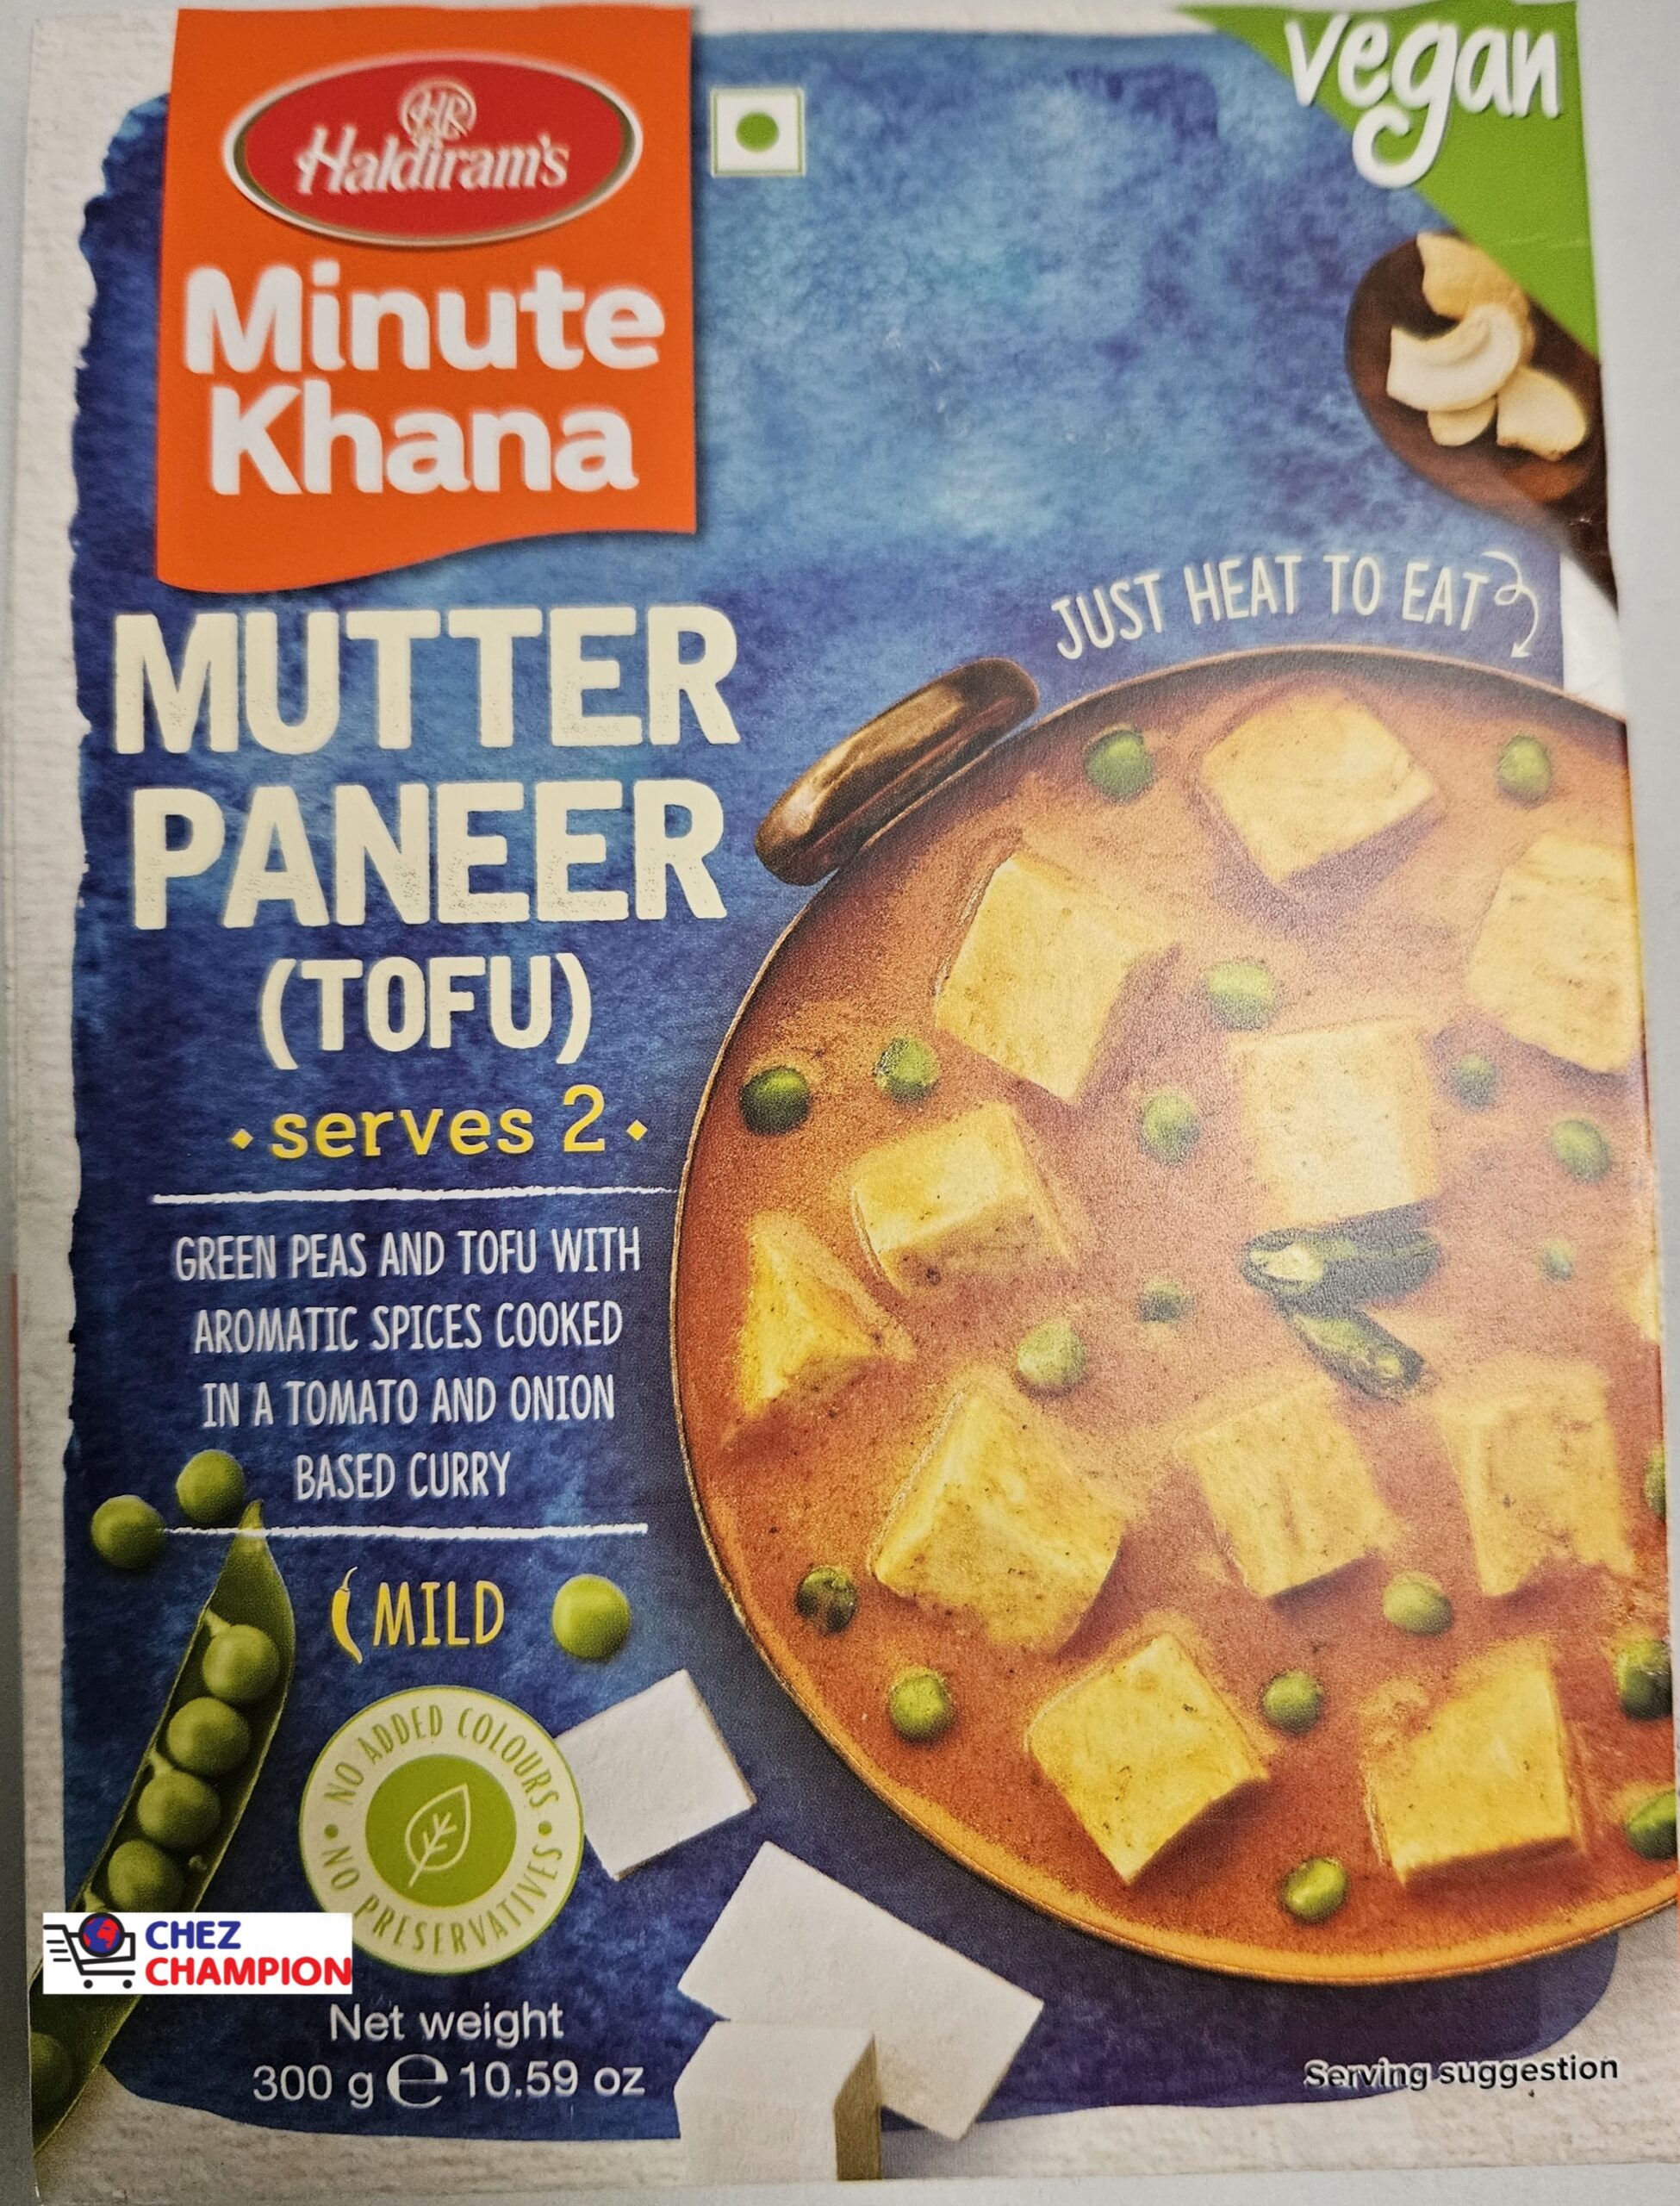 Haldiram’s mutter paneer (tofu) – 300g